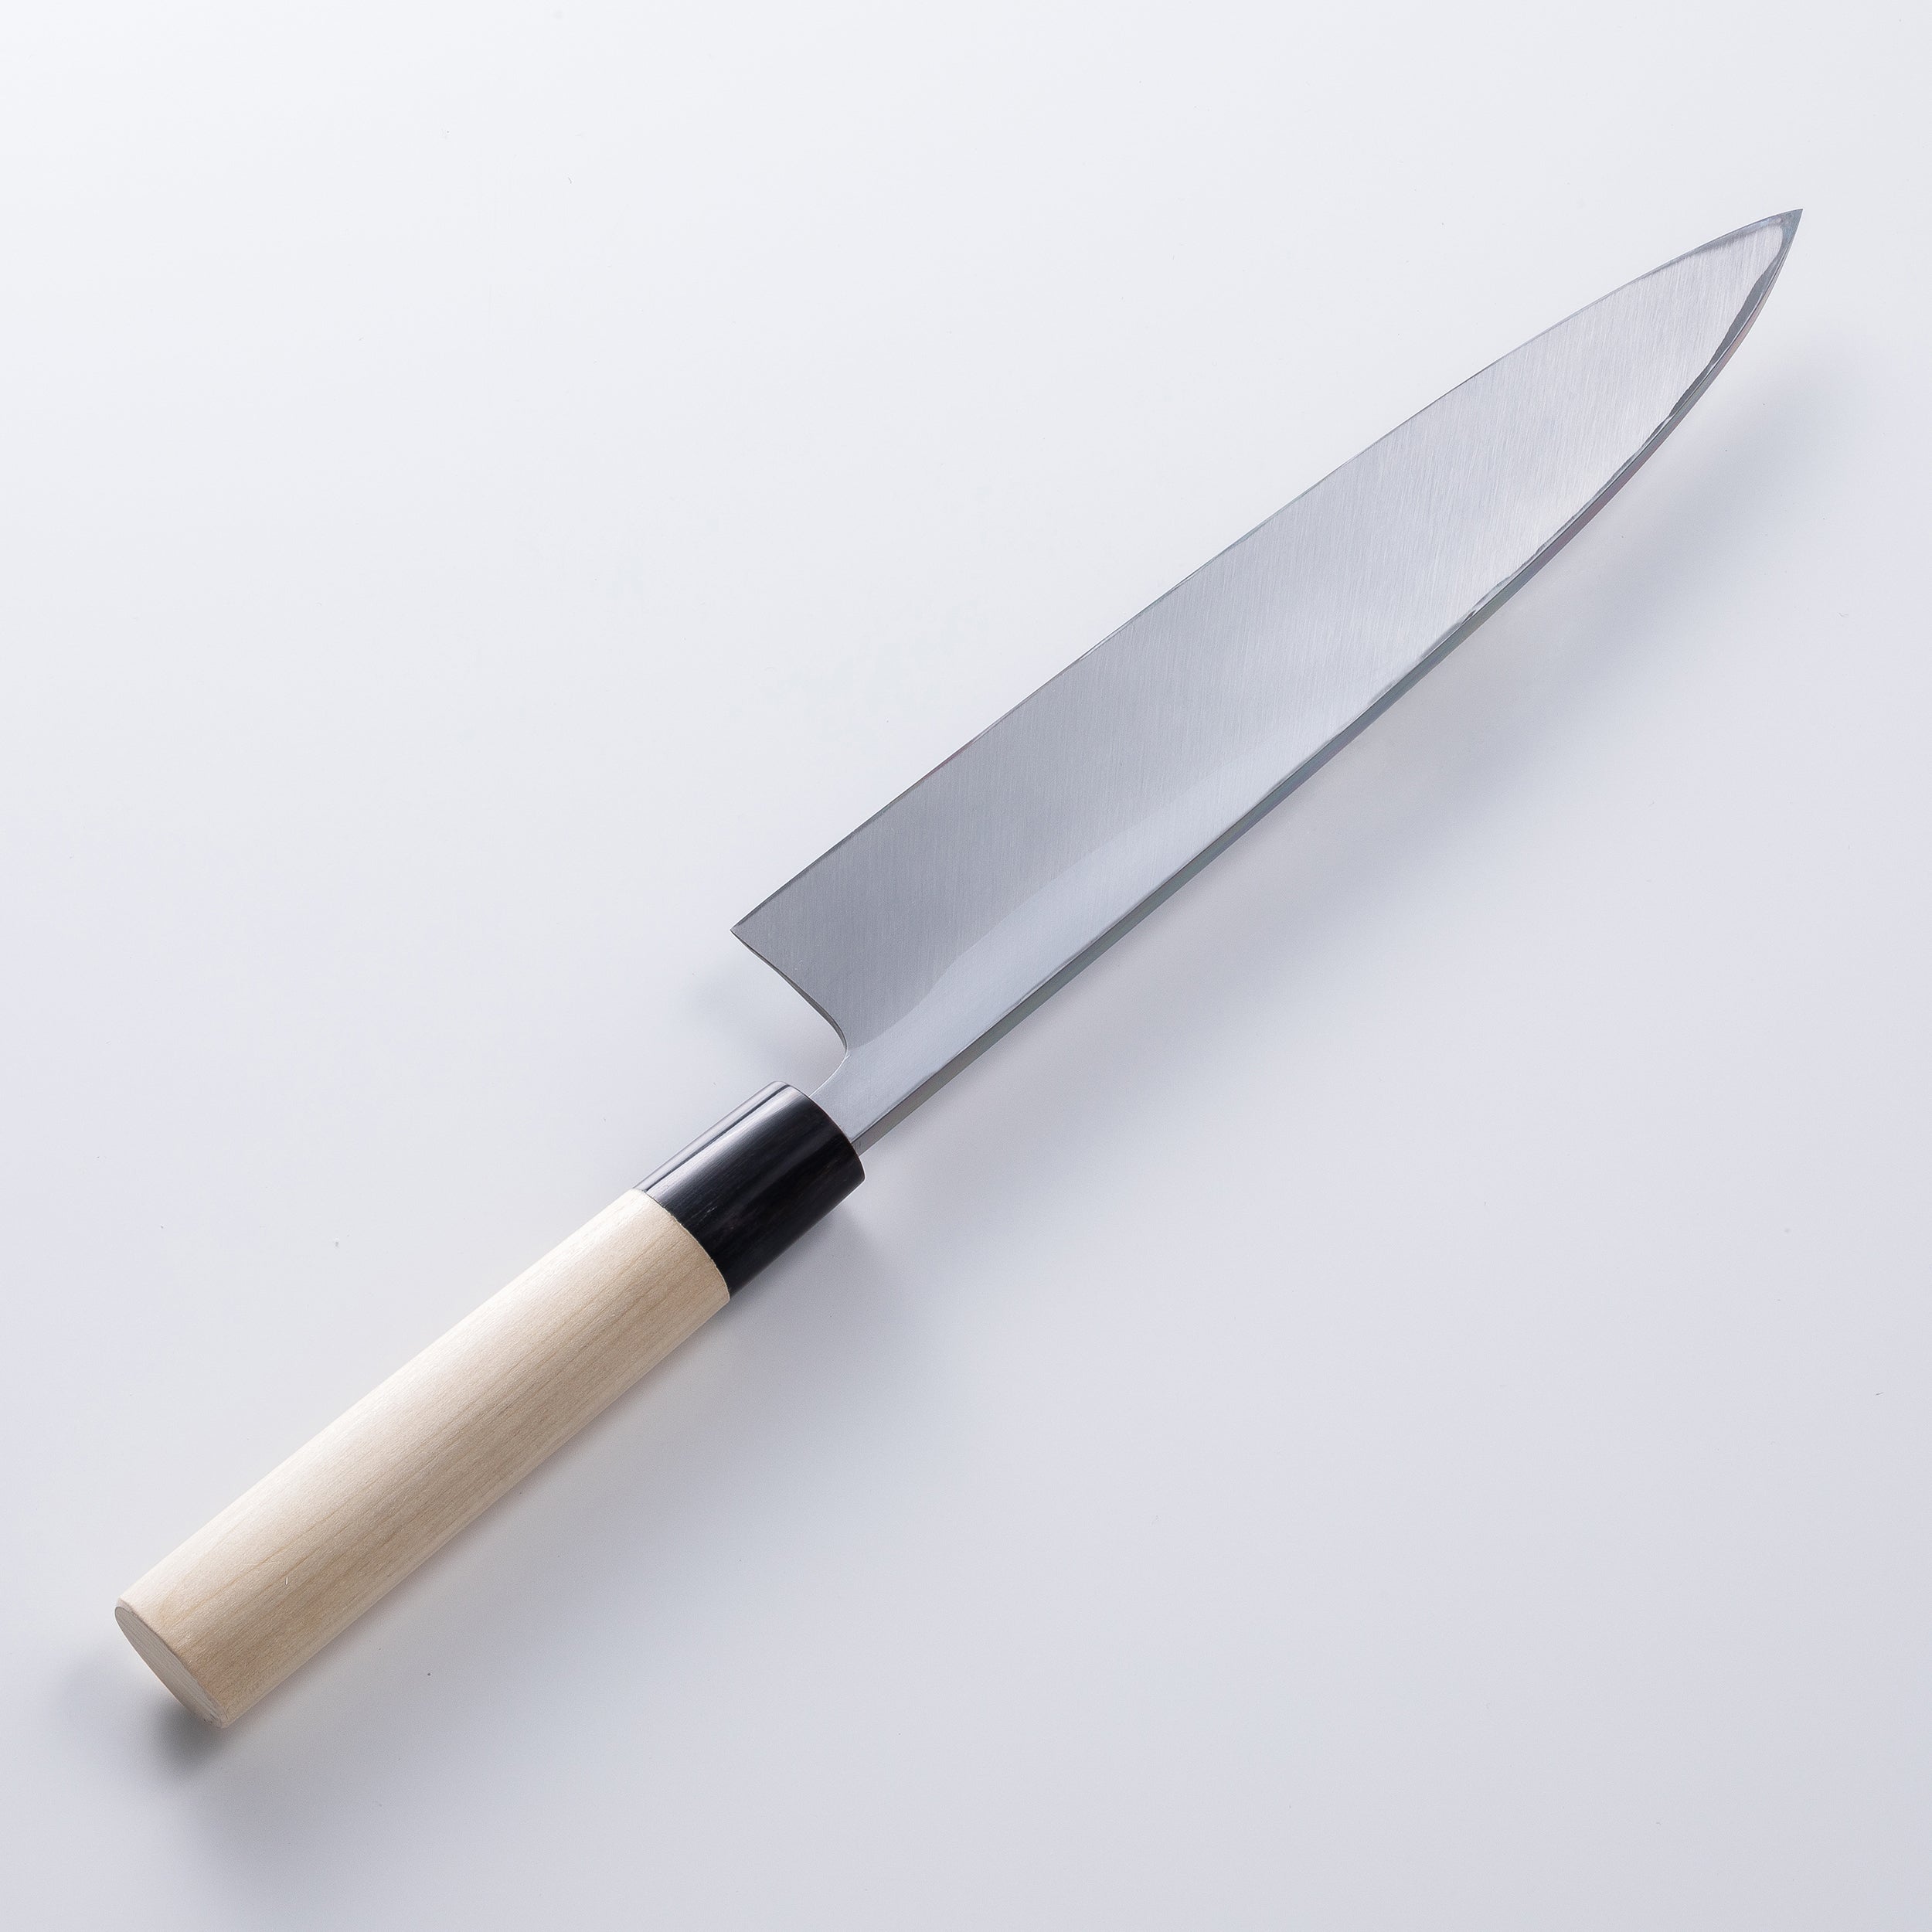 SAKAI MOTOKANE Mioroshi Deba (Butcher Knife) Shirogami No.2, 180mm~240mm with Wooden Case